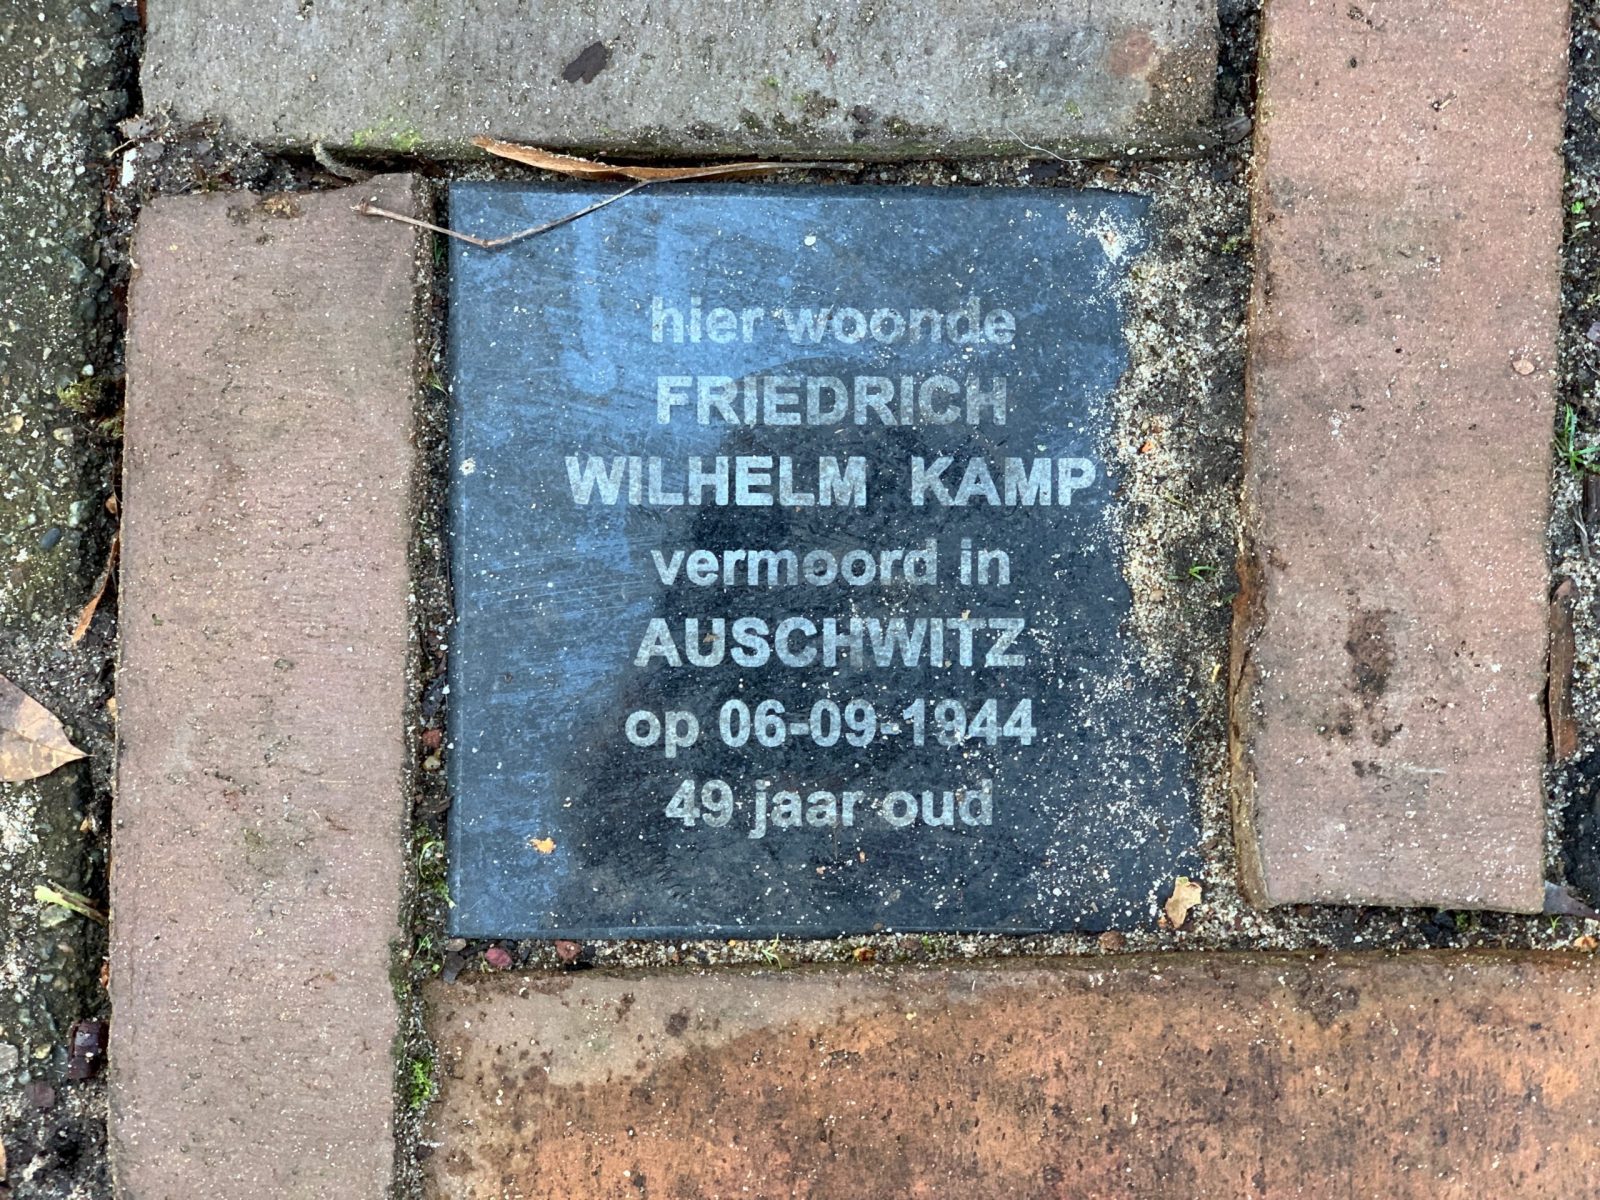 Memorial Plaque for Wilhelm Kamp